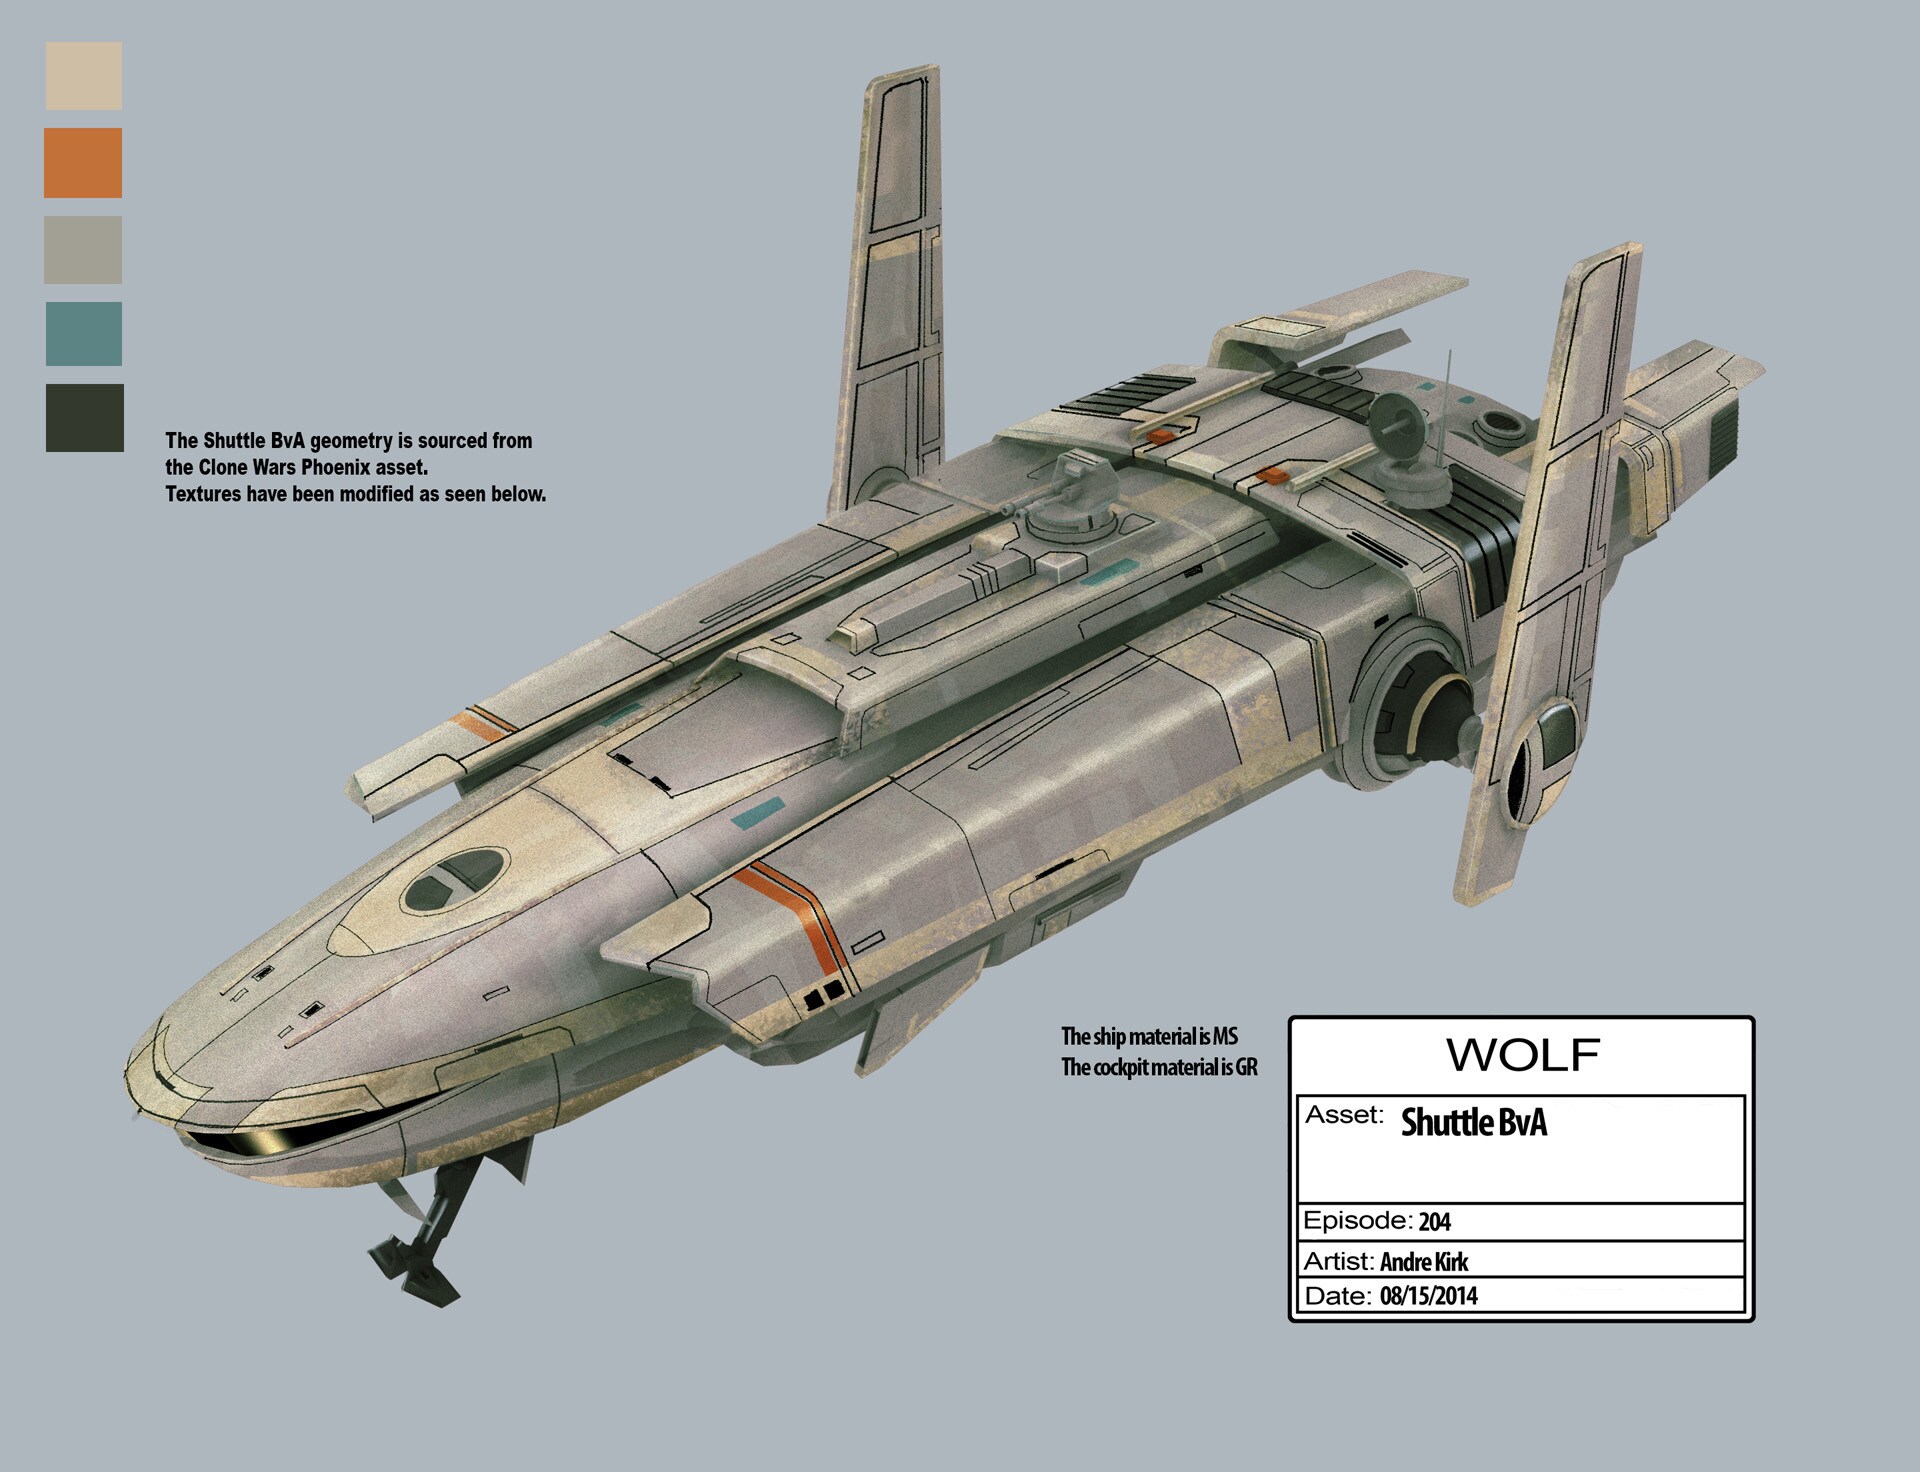 Shuttle B illustration by Andre Kirk.